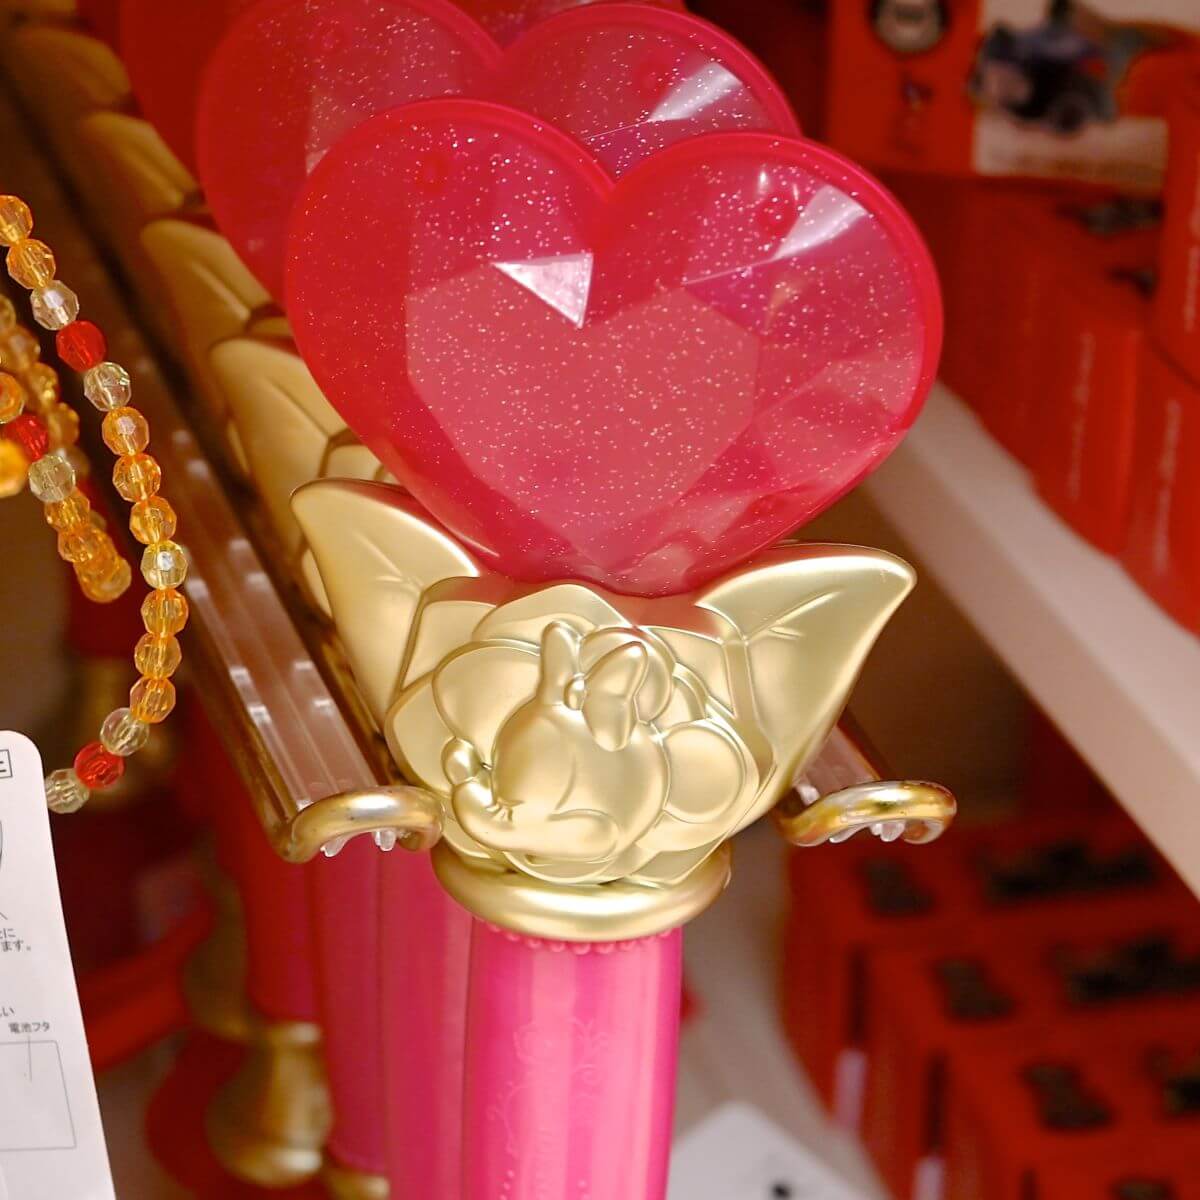 バトンを振ると音と光が楽しめる 東京ディズニーランド ミニーマウス 光るおもちゃ お土産